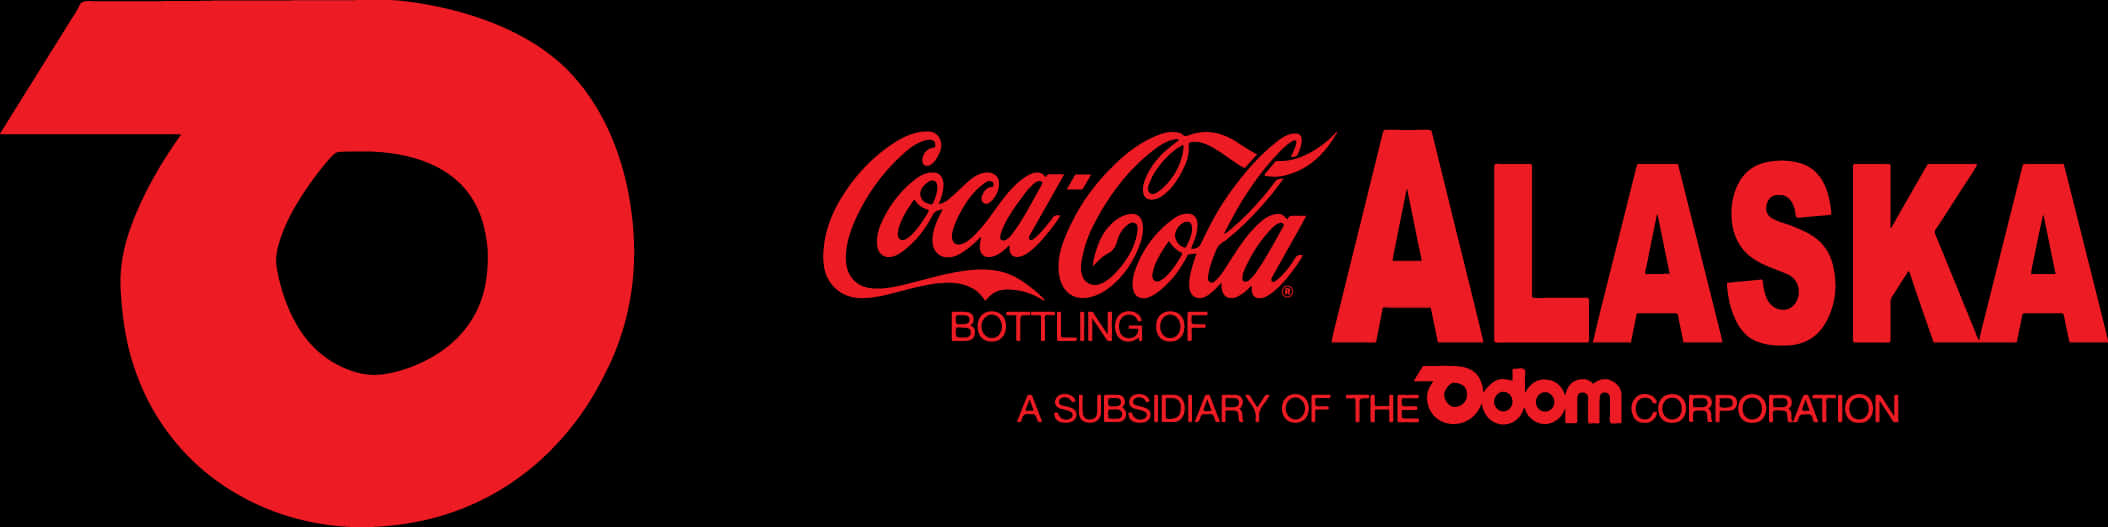 Coca Cola Alaska70th Anniversary Logo PNG